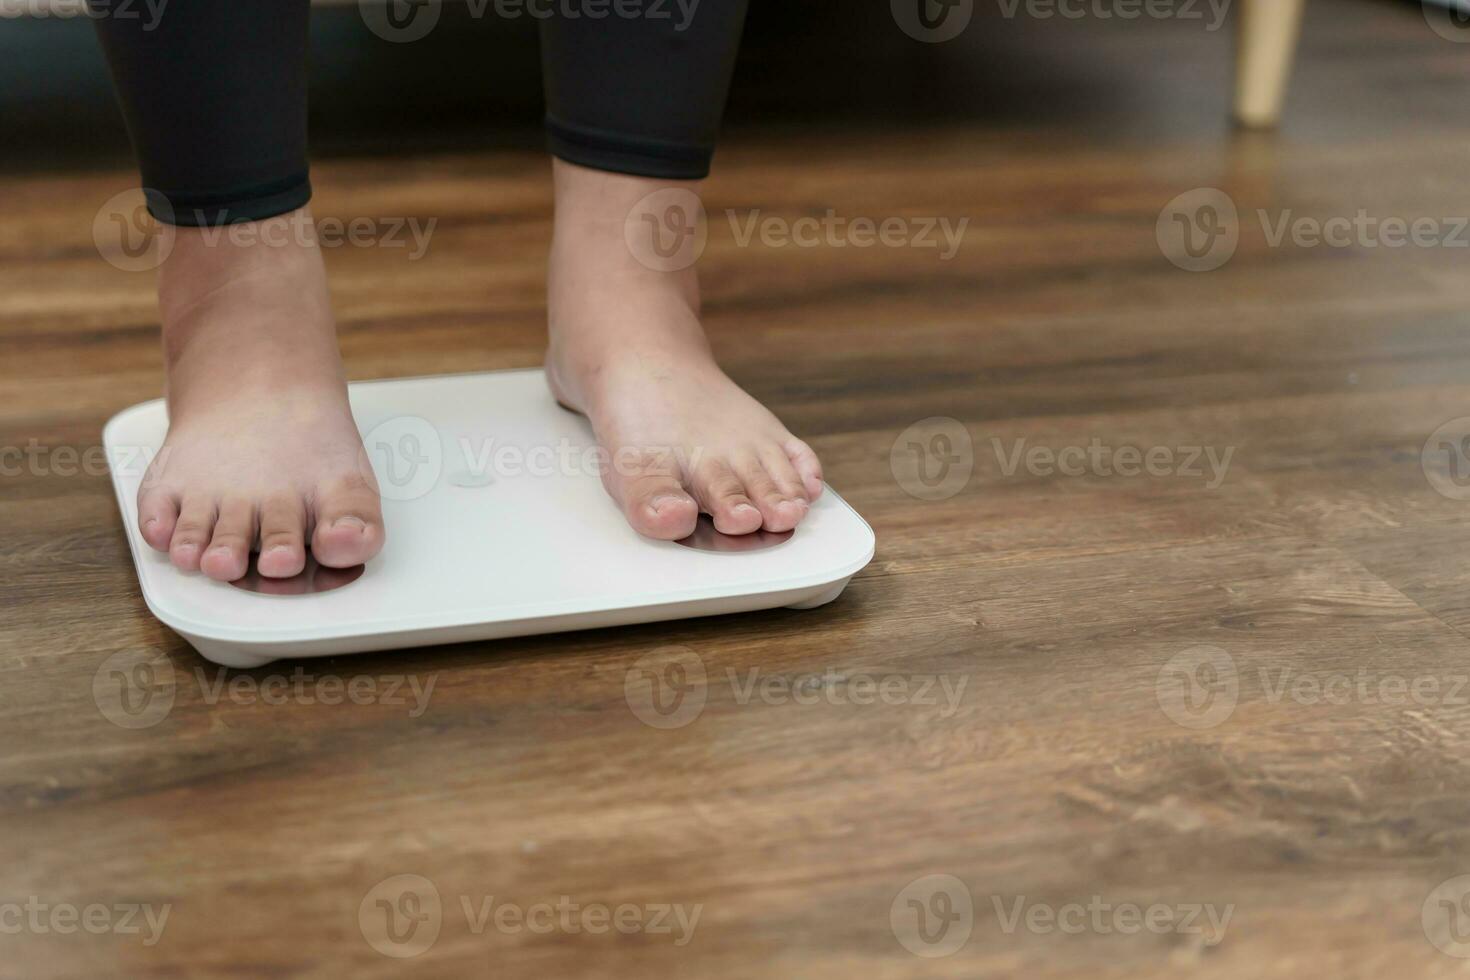 dik eetpatroon en schaal voeten staand Aan elektronisch balans voor gewicht controle. meting instrument in kilogram voor een eetpatroon controle. foto